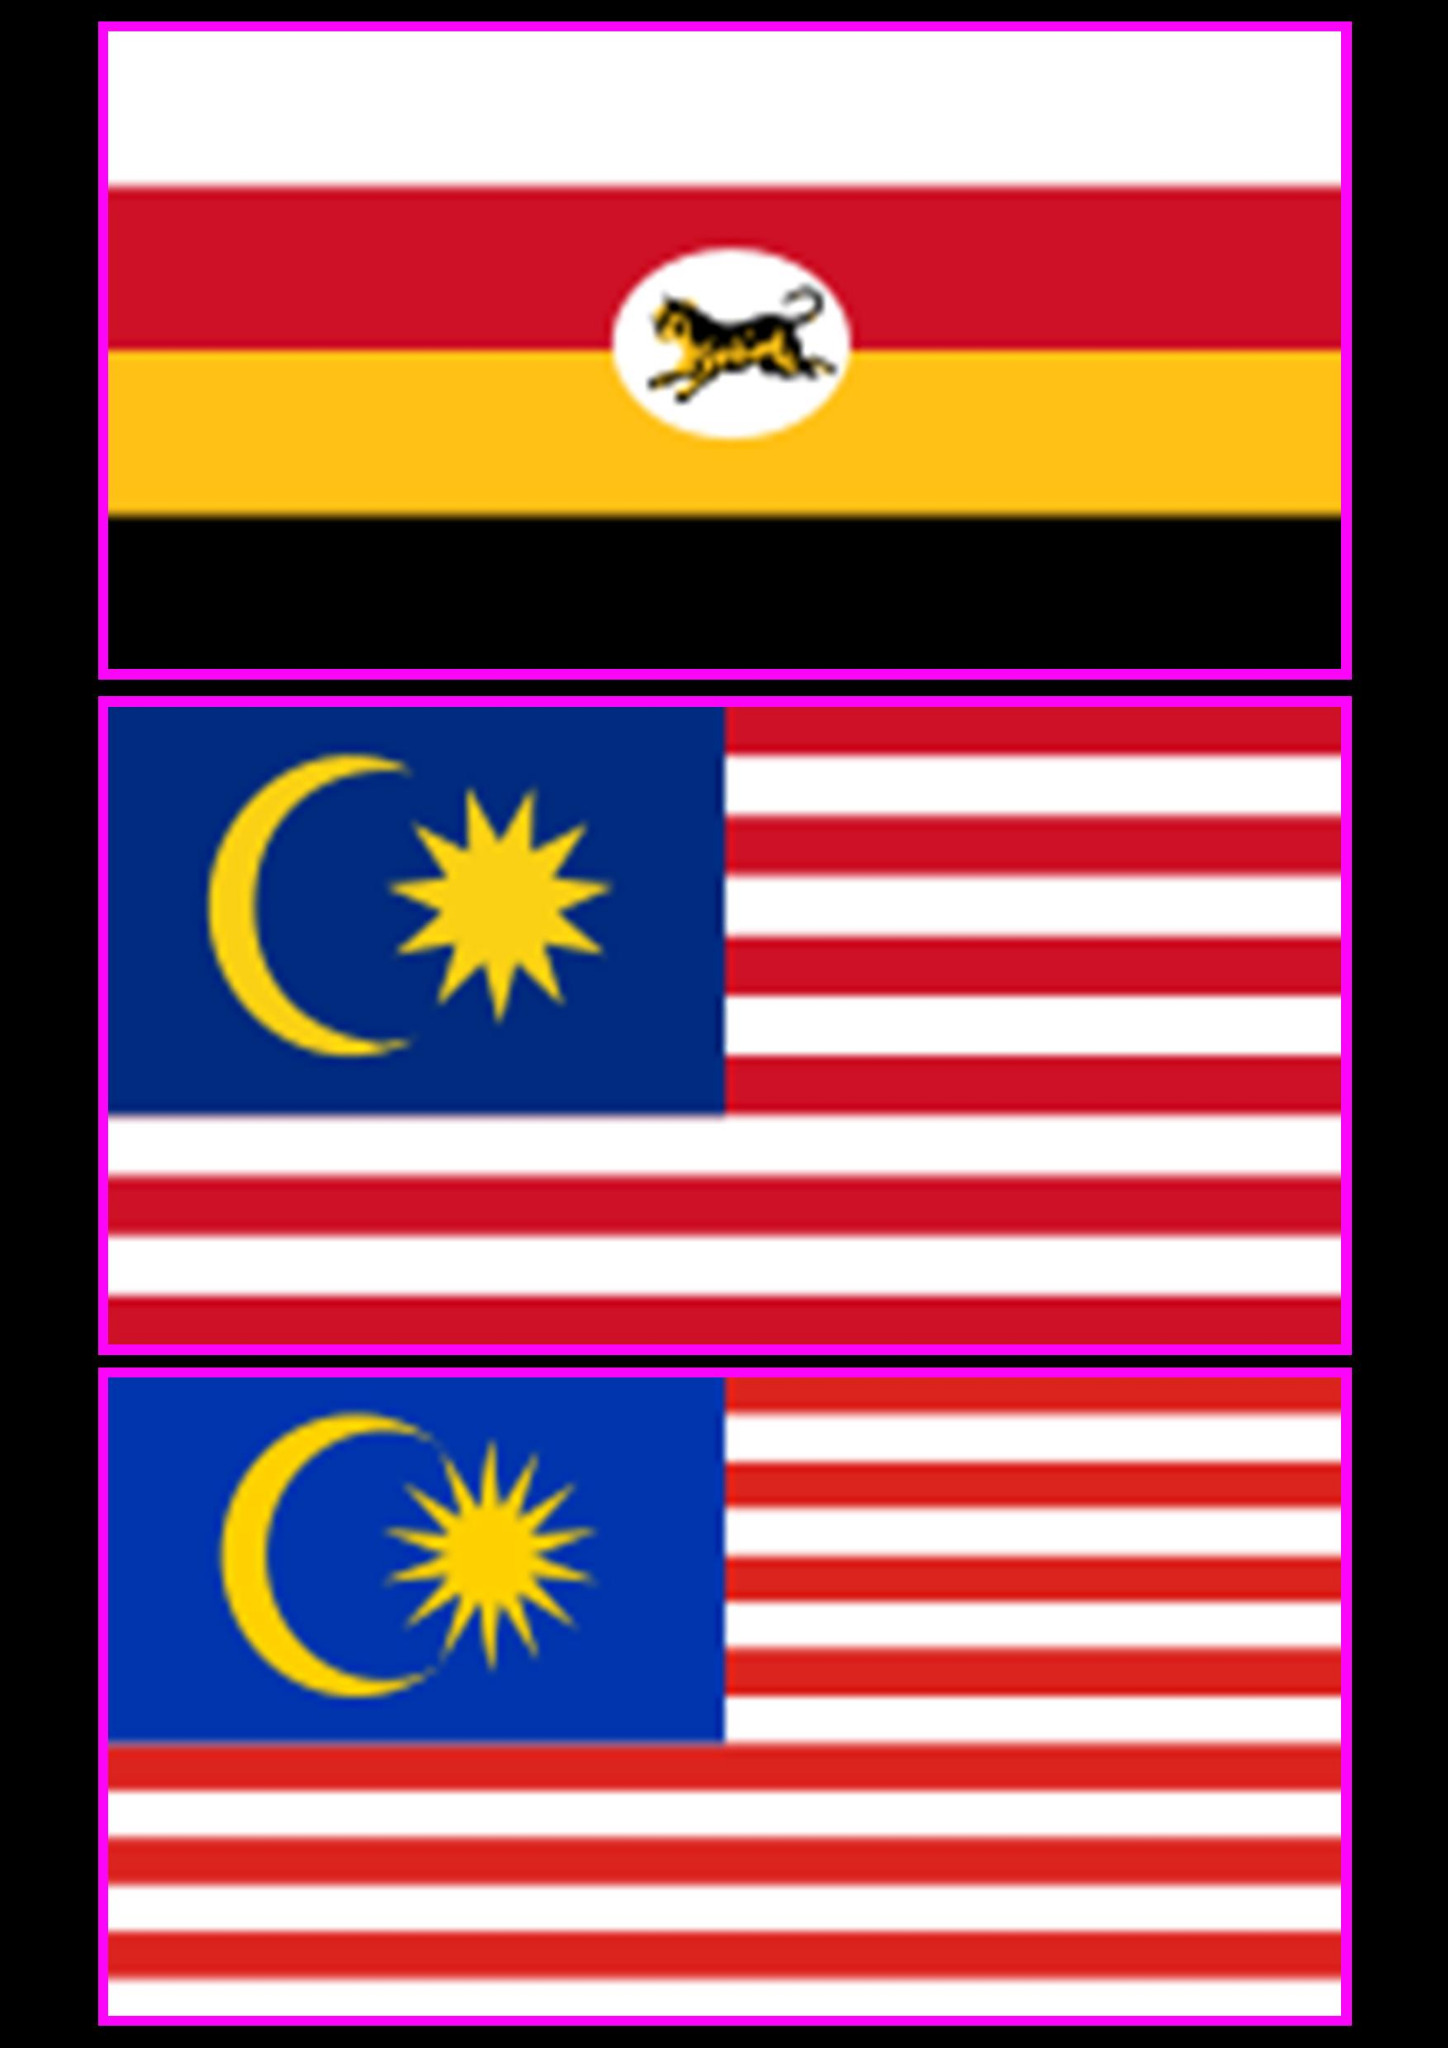 Mies Zan On Twitter Bendera Persekutuan Tanah Melayu 1896 1950 1950 1963 Bendera Malaysia Http T Co Utyk02ot